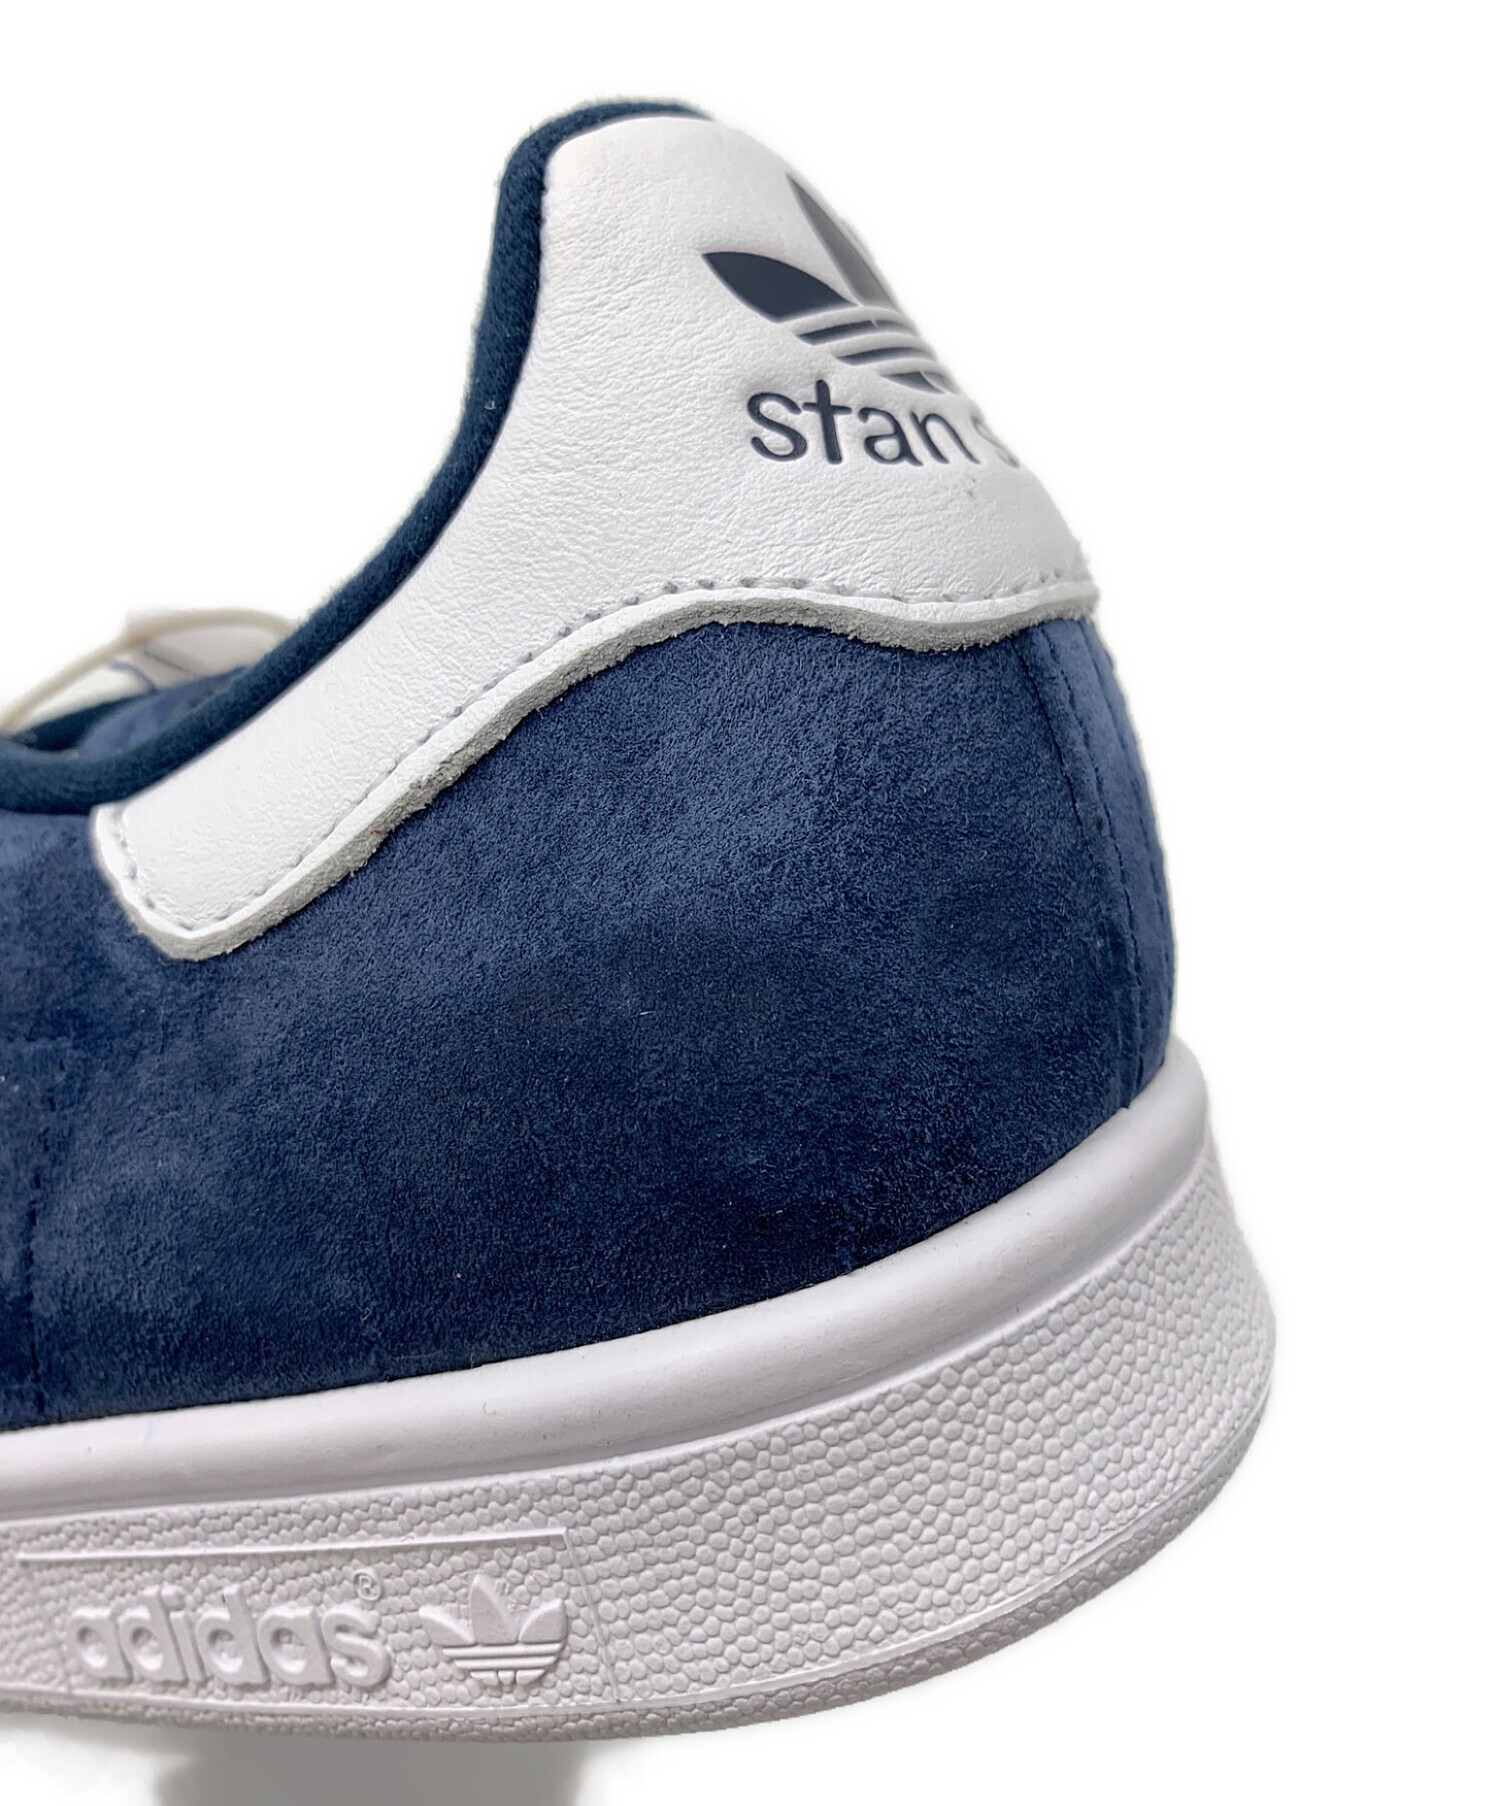 adidas (アディダス) STAN SMITH ブルー サイズ:265 未使用品